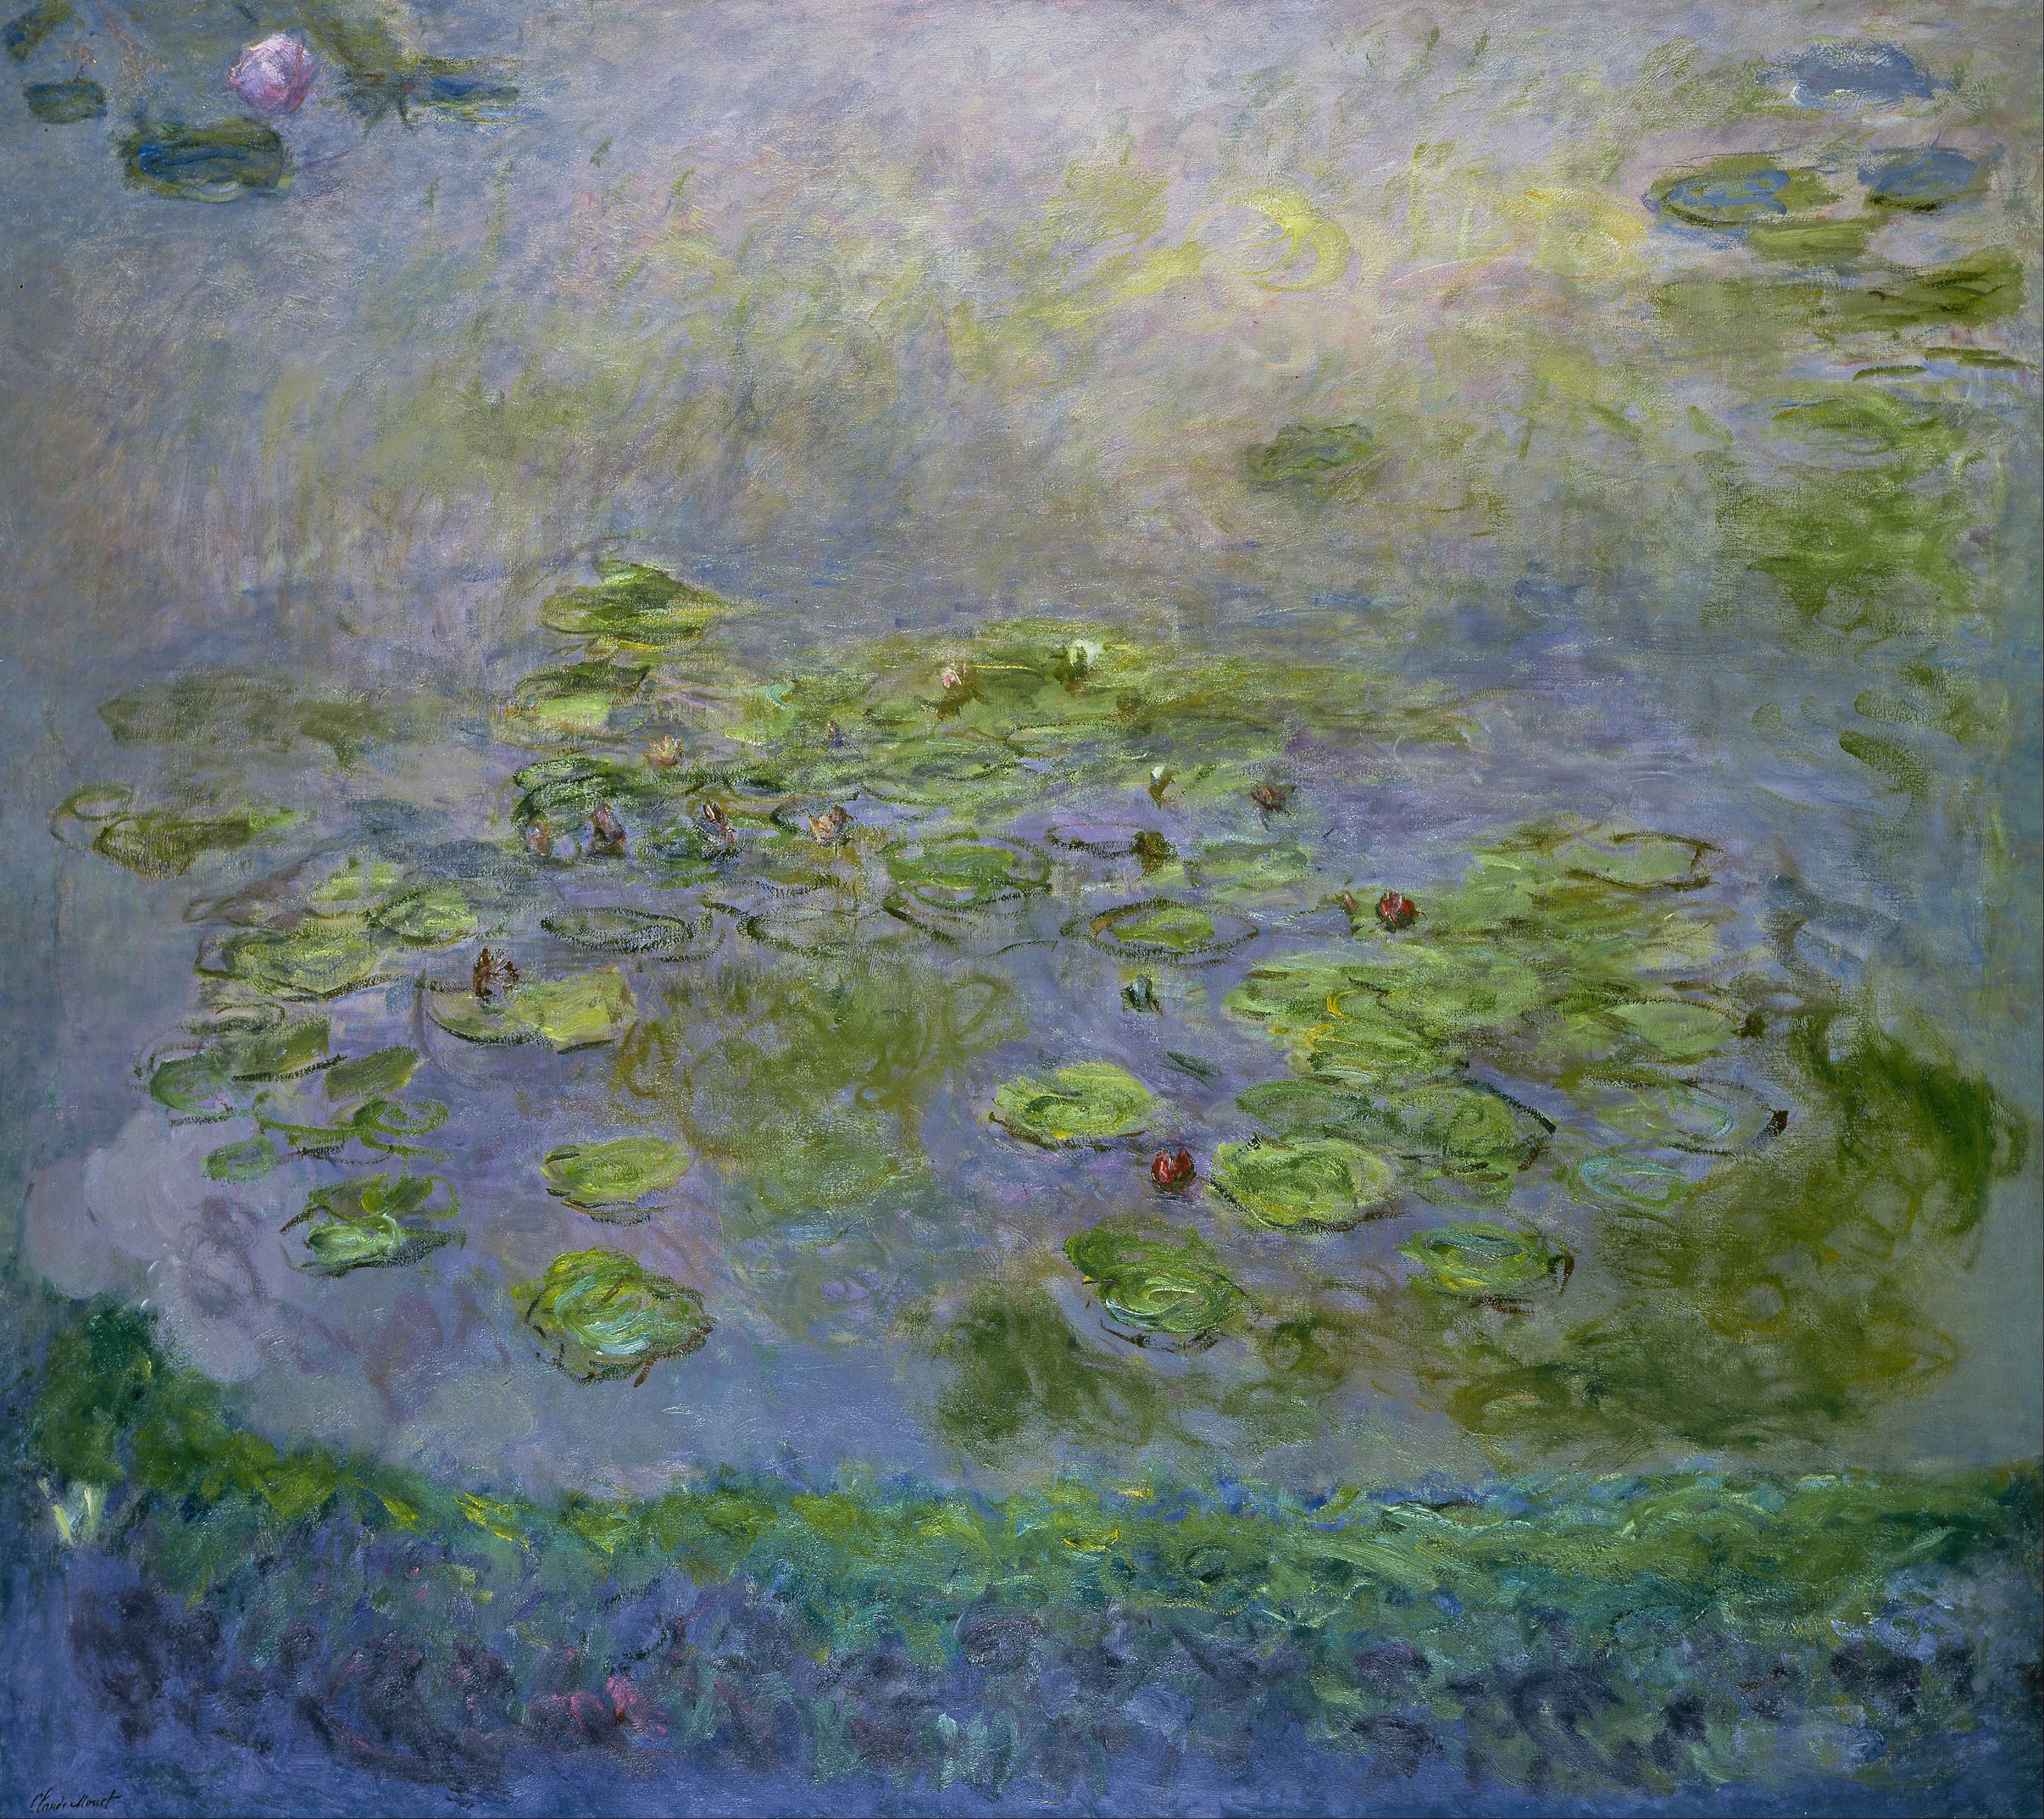 Vízililiomok Monet-től (forrás: Wikipedia)